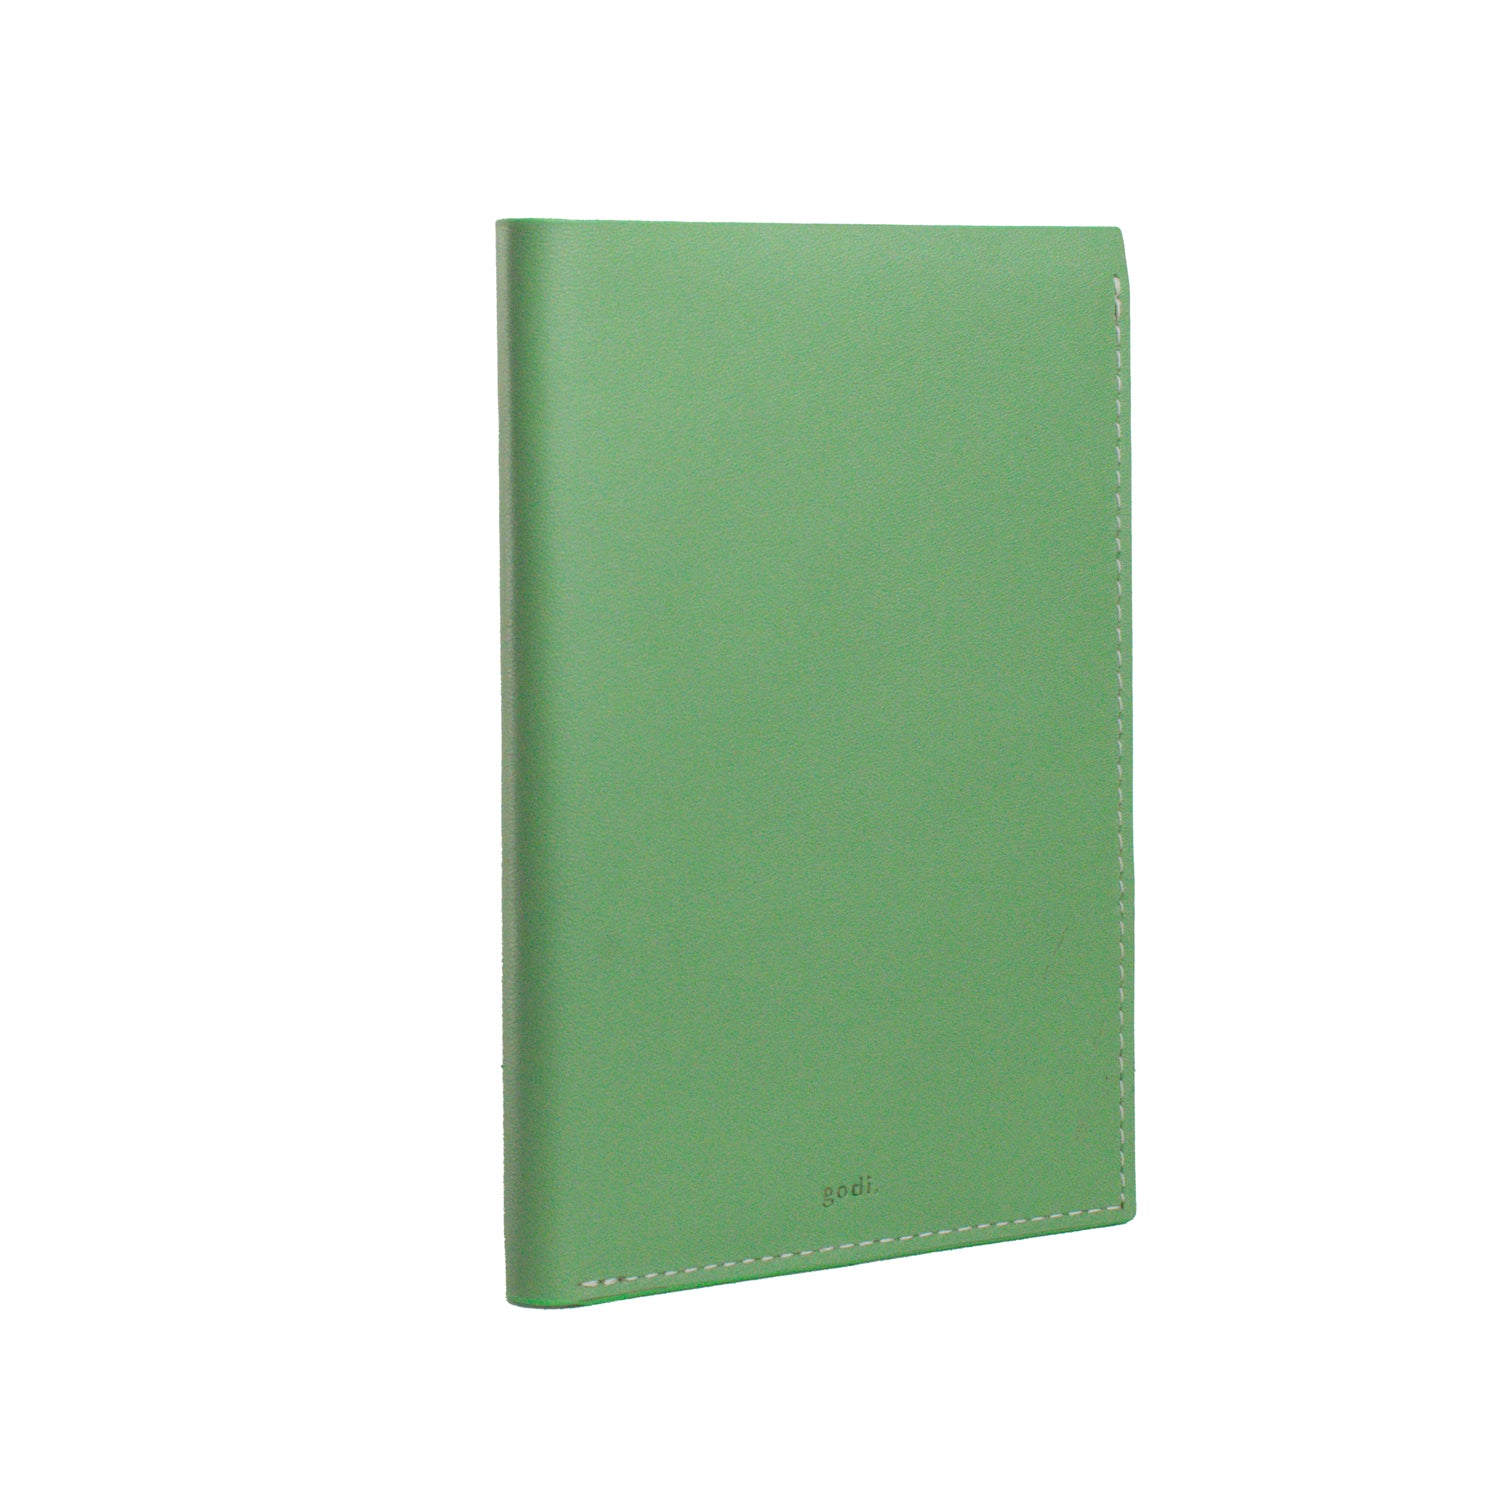 Passport Cover in Sea Green